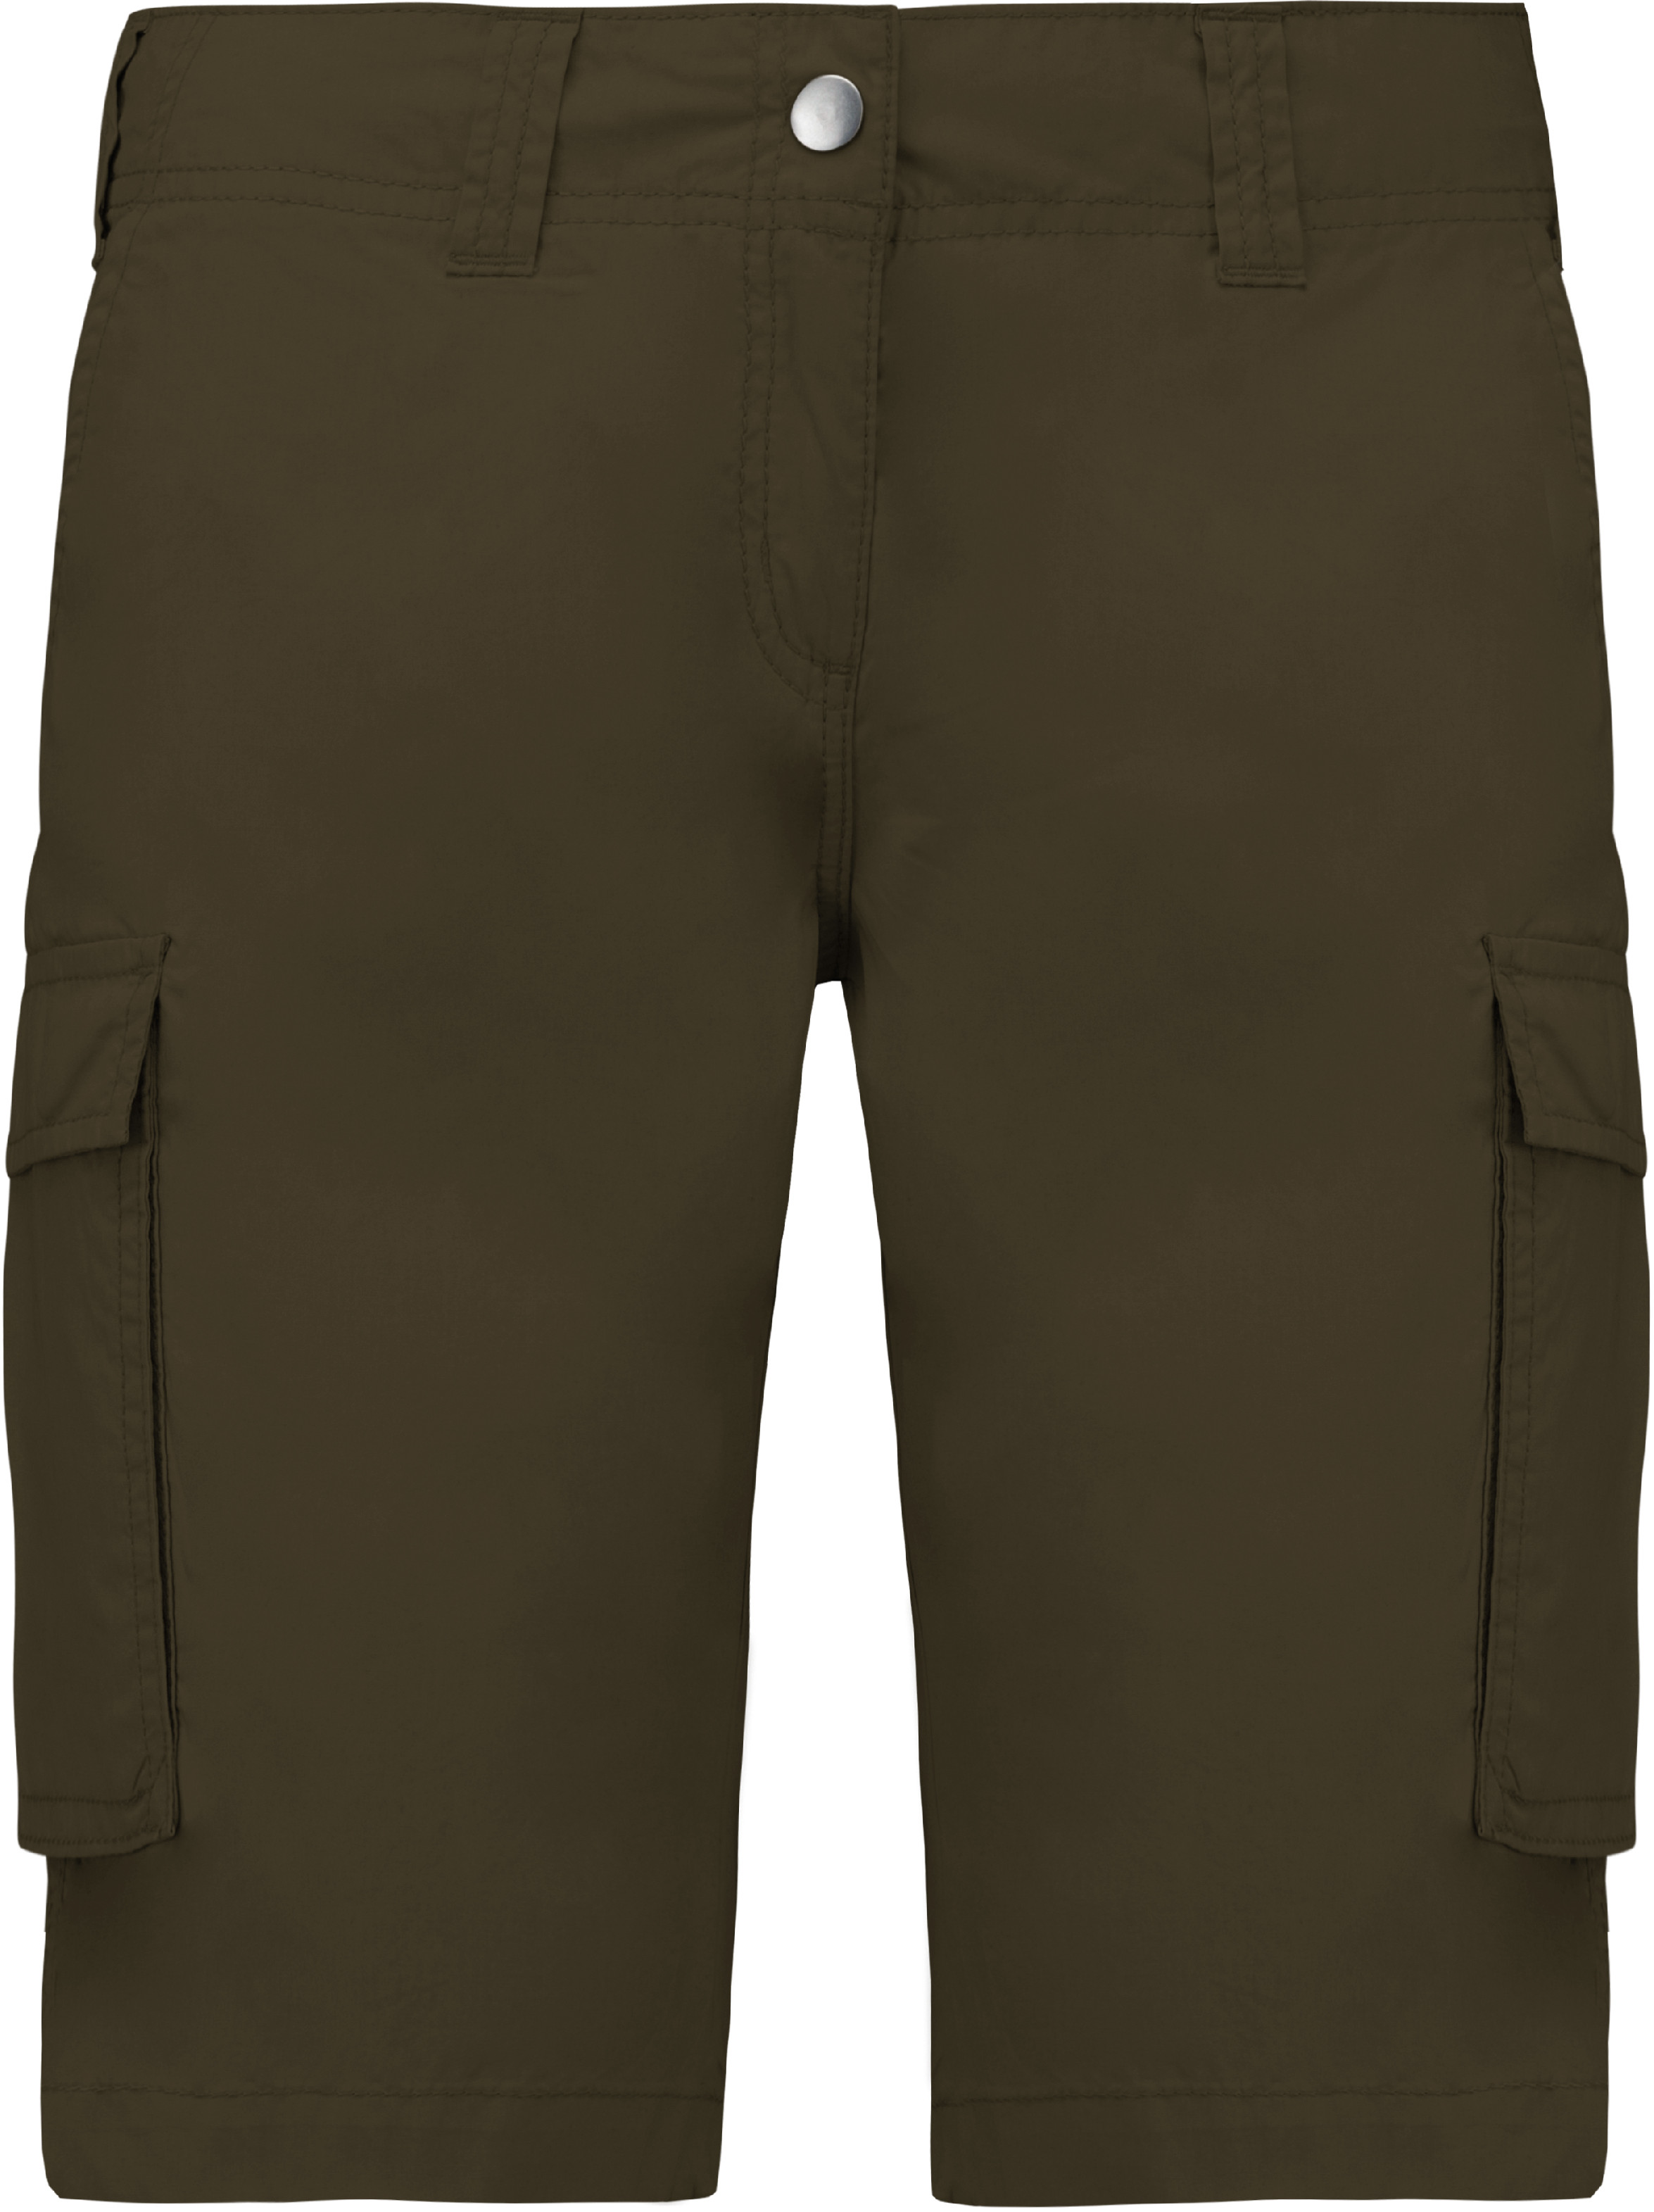 Dámské šortky s kapsami - Bermudy K756 Barva: khaki, Velikost: 34